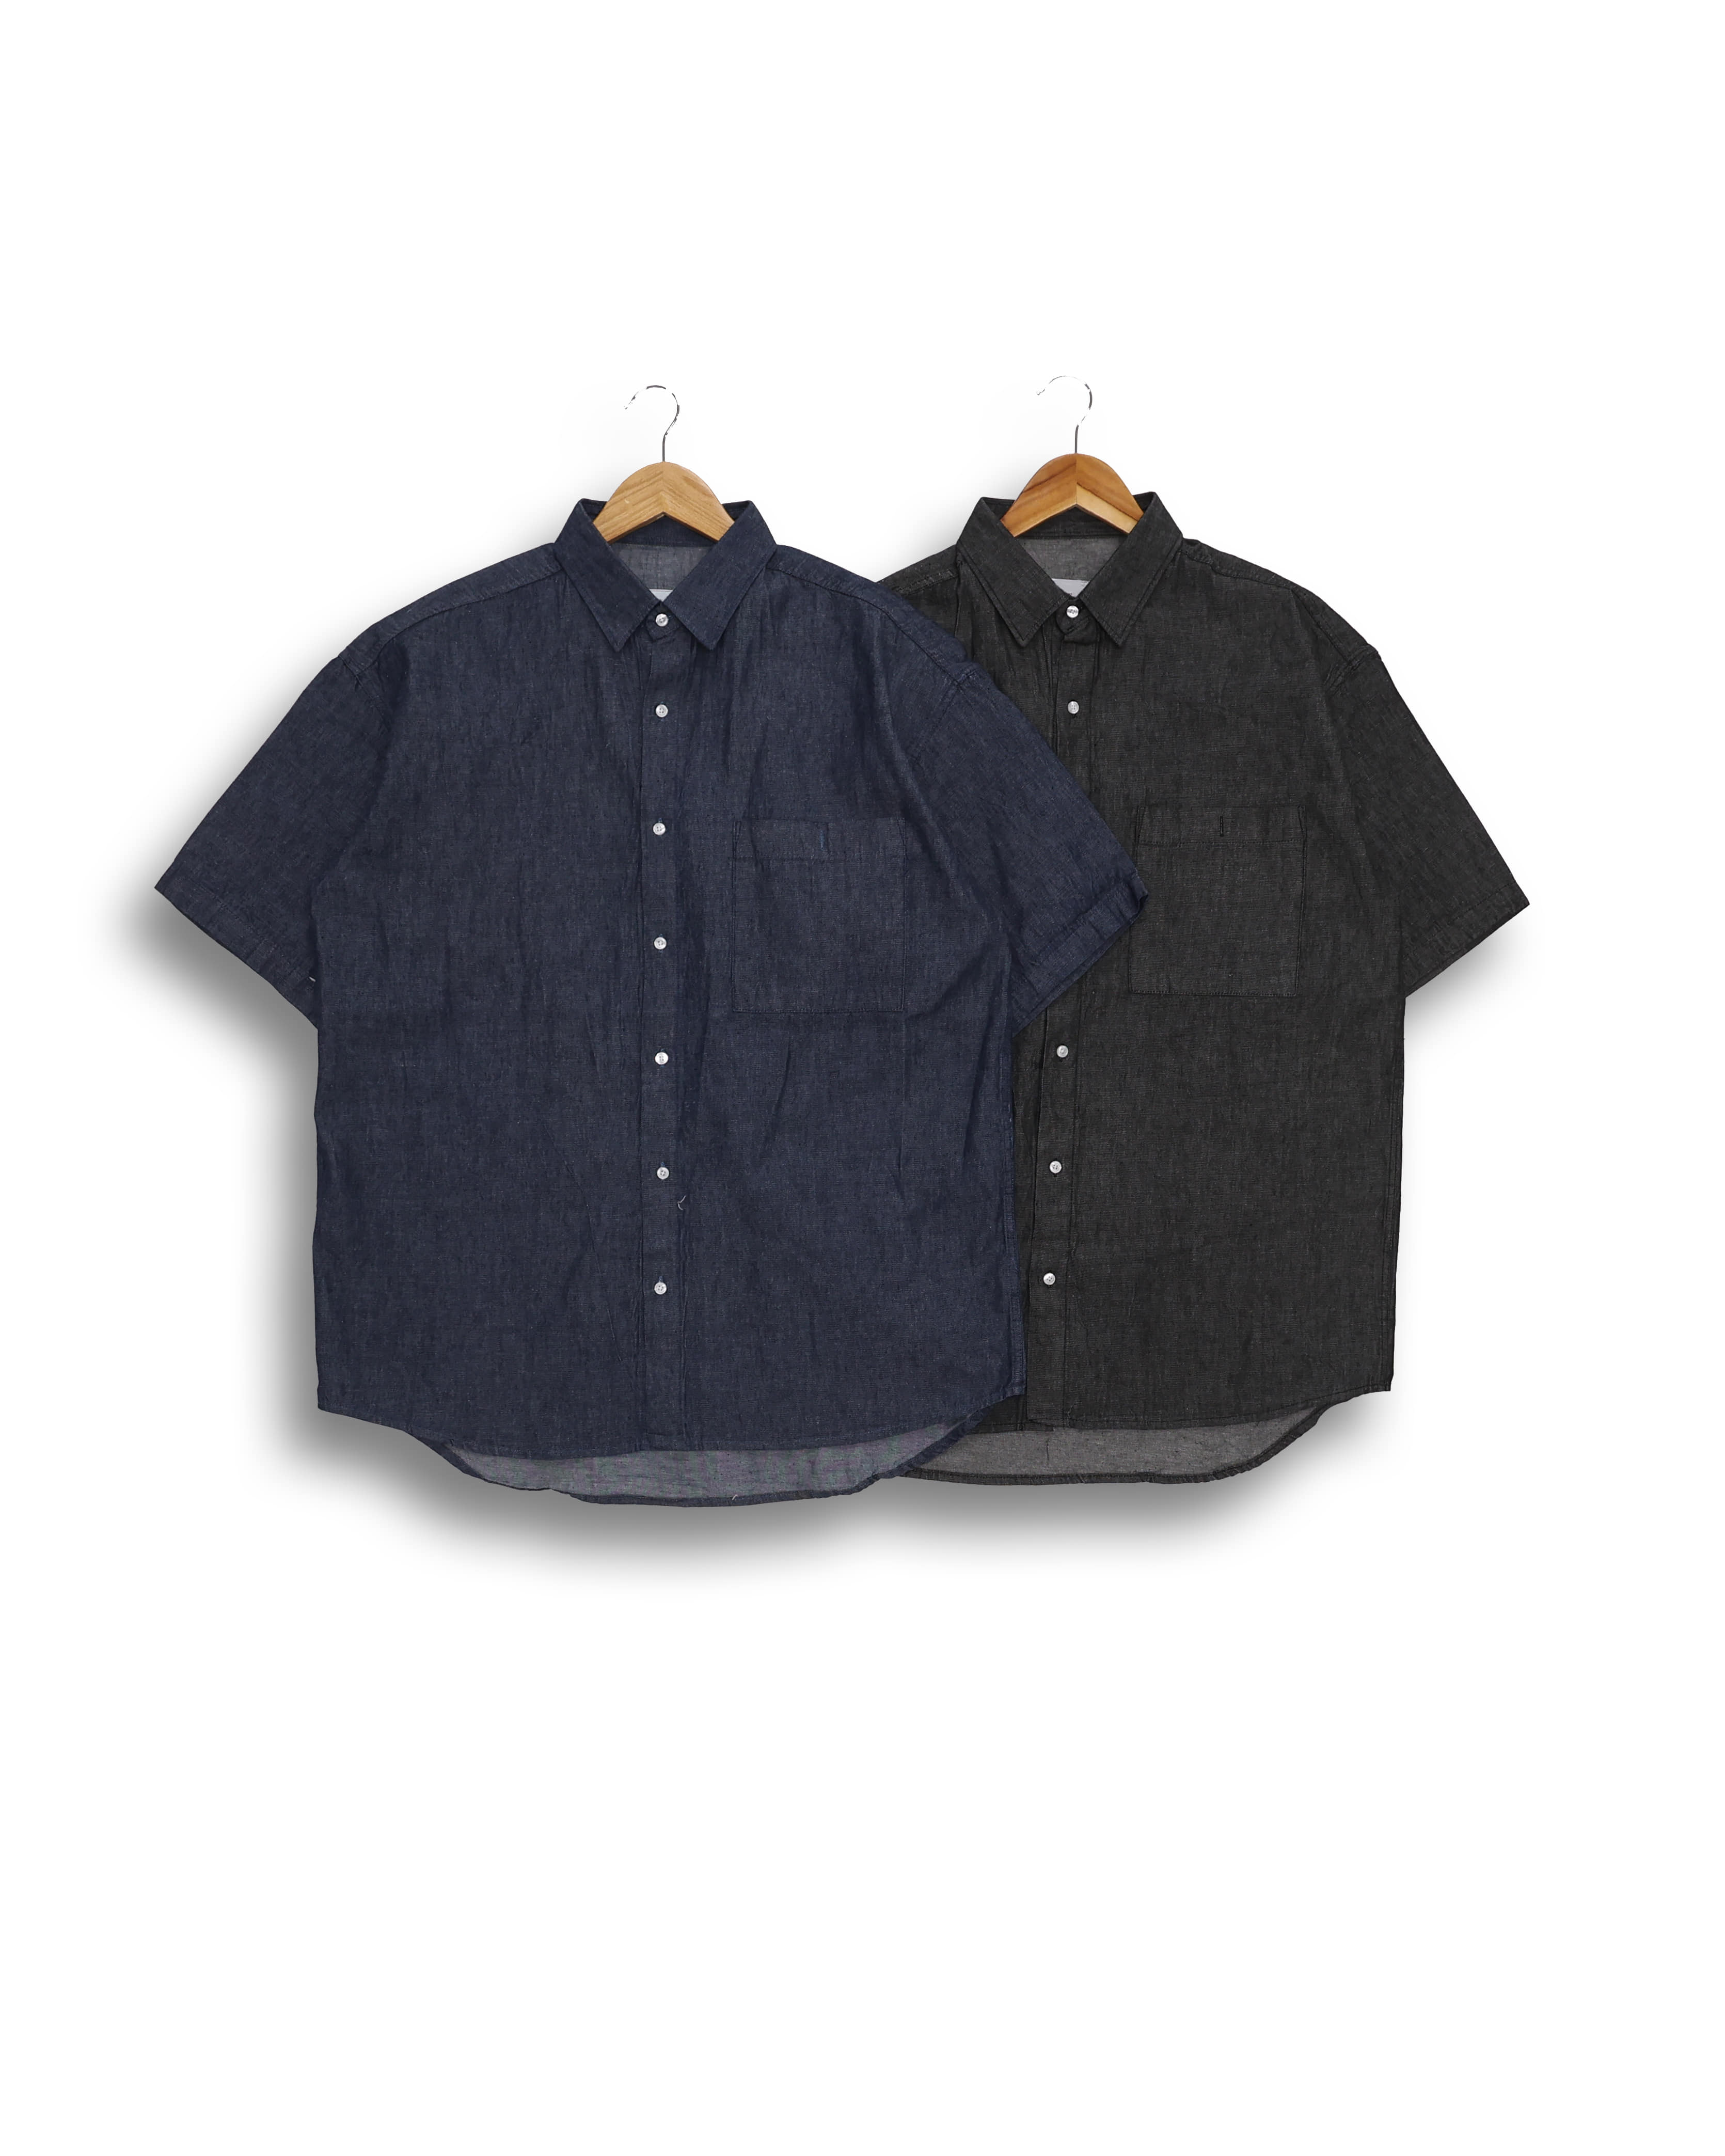 CRECENT Linen Denim Wide Half Shirts (Black Denim/Blue Denim)